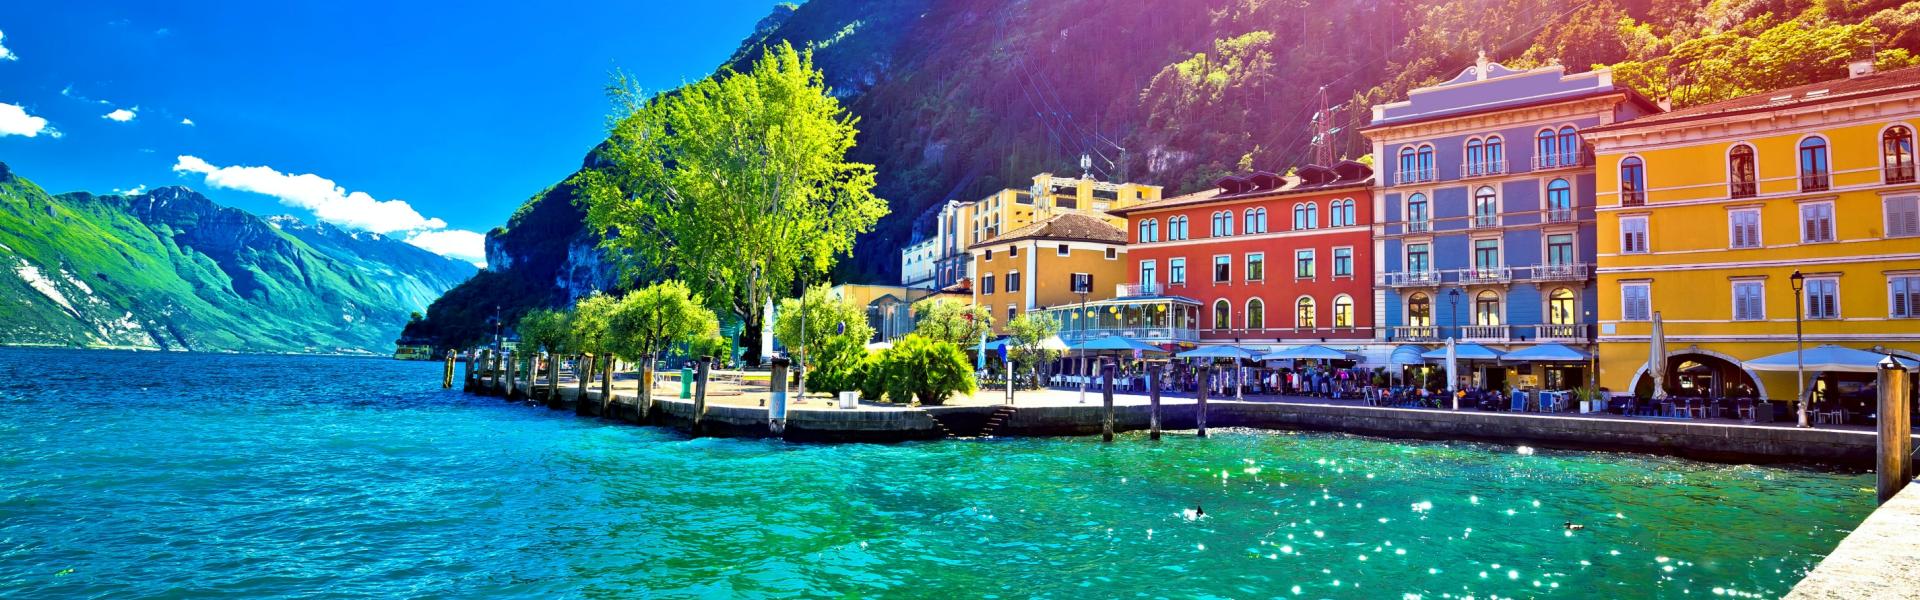 Vakantiehuis Riva del Garda – Eindeloos genieten aan het Gardameer - Casamundo